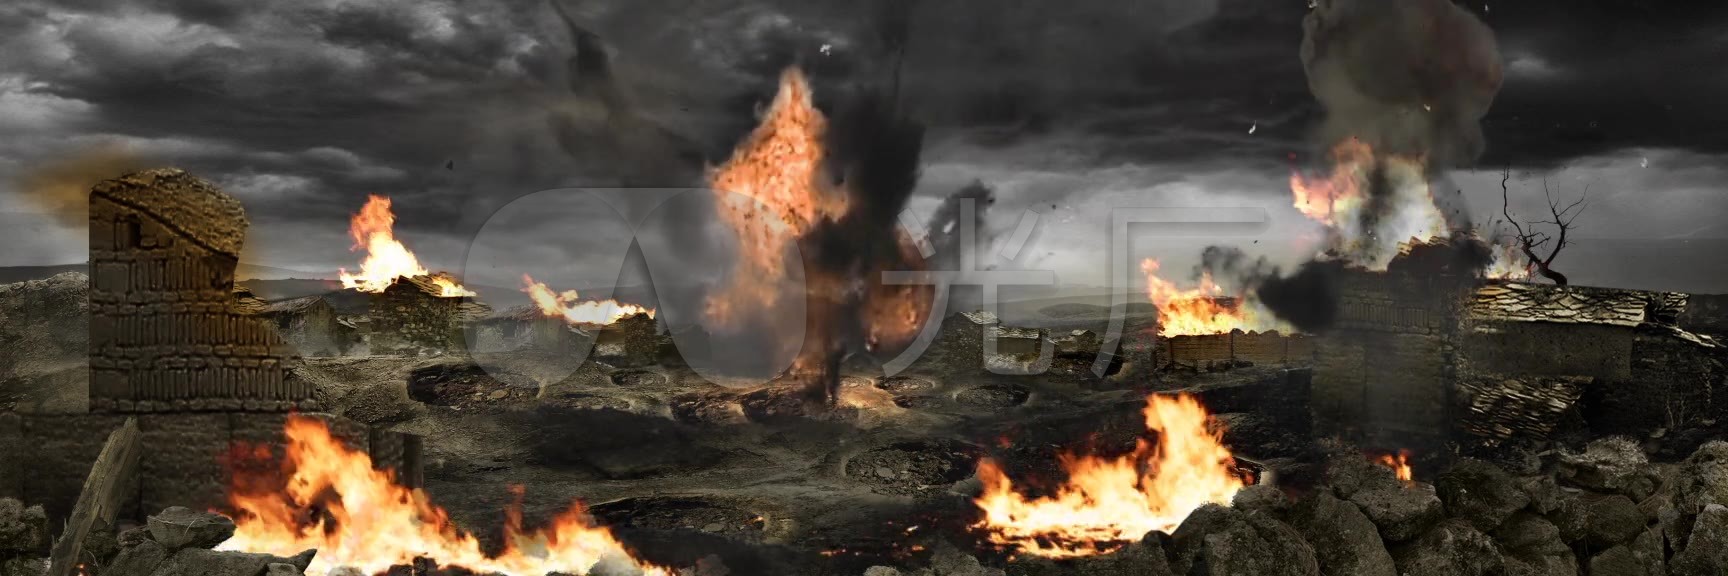 视频素材 舞台背景 场景背景 战火纷飞硝烟弥漫的战场 来自视频原始